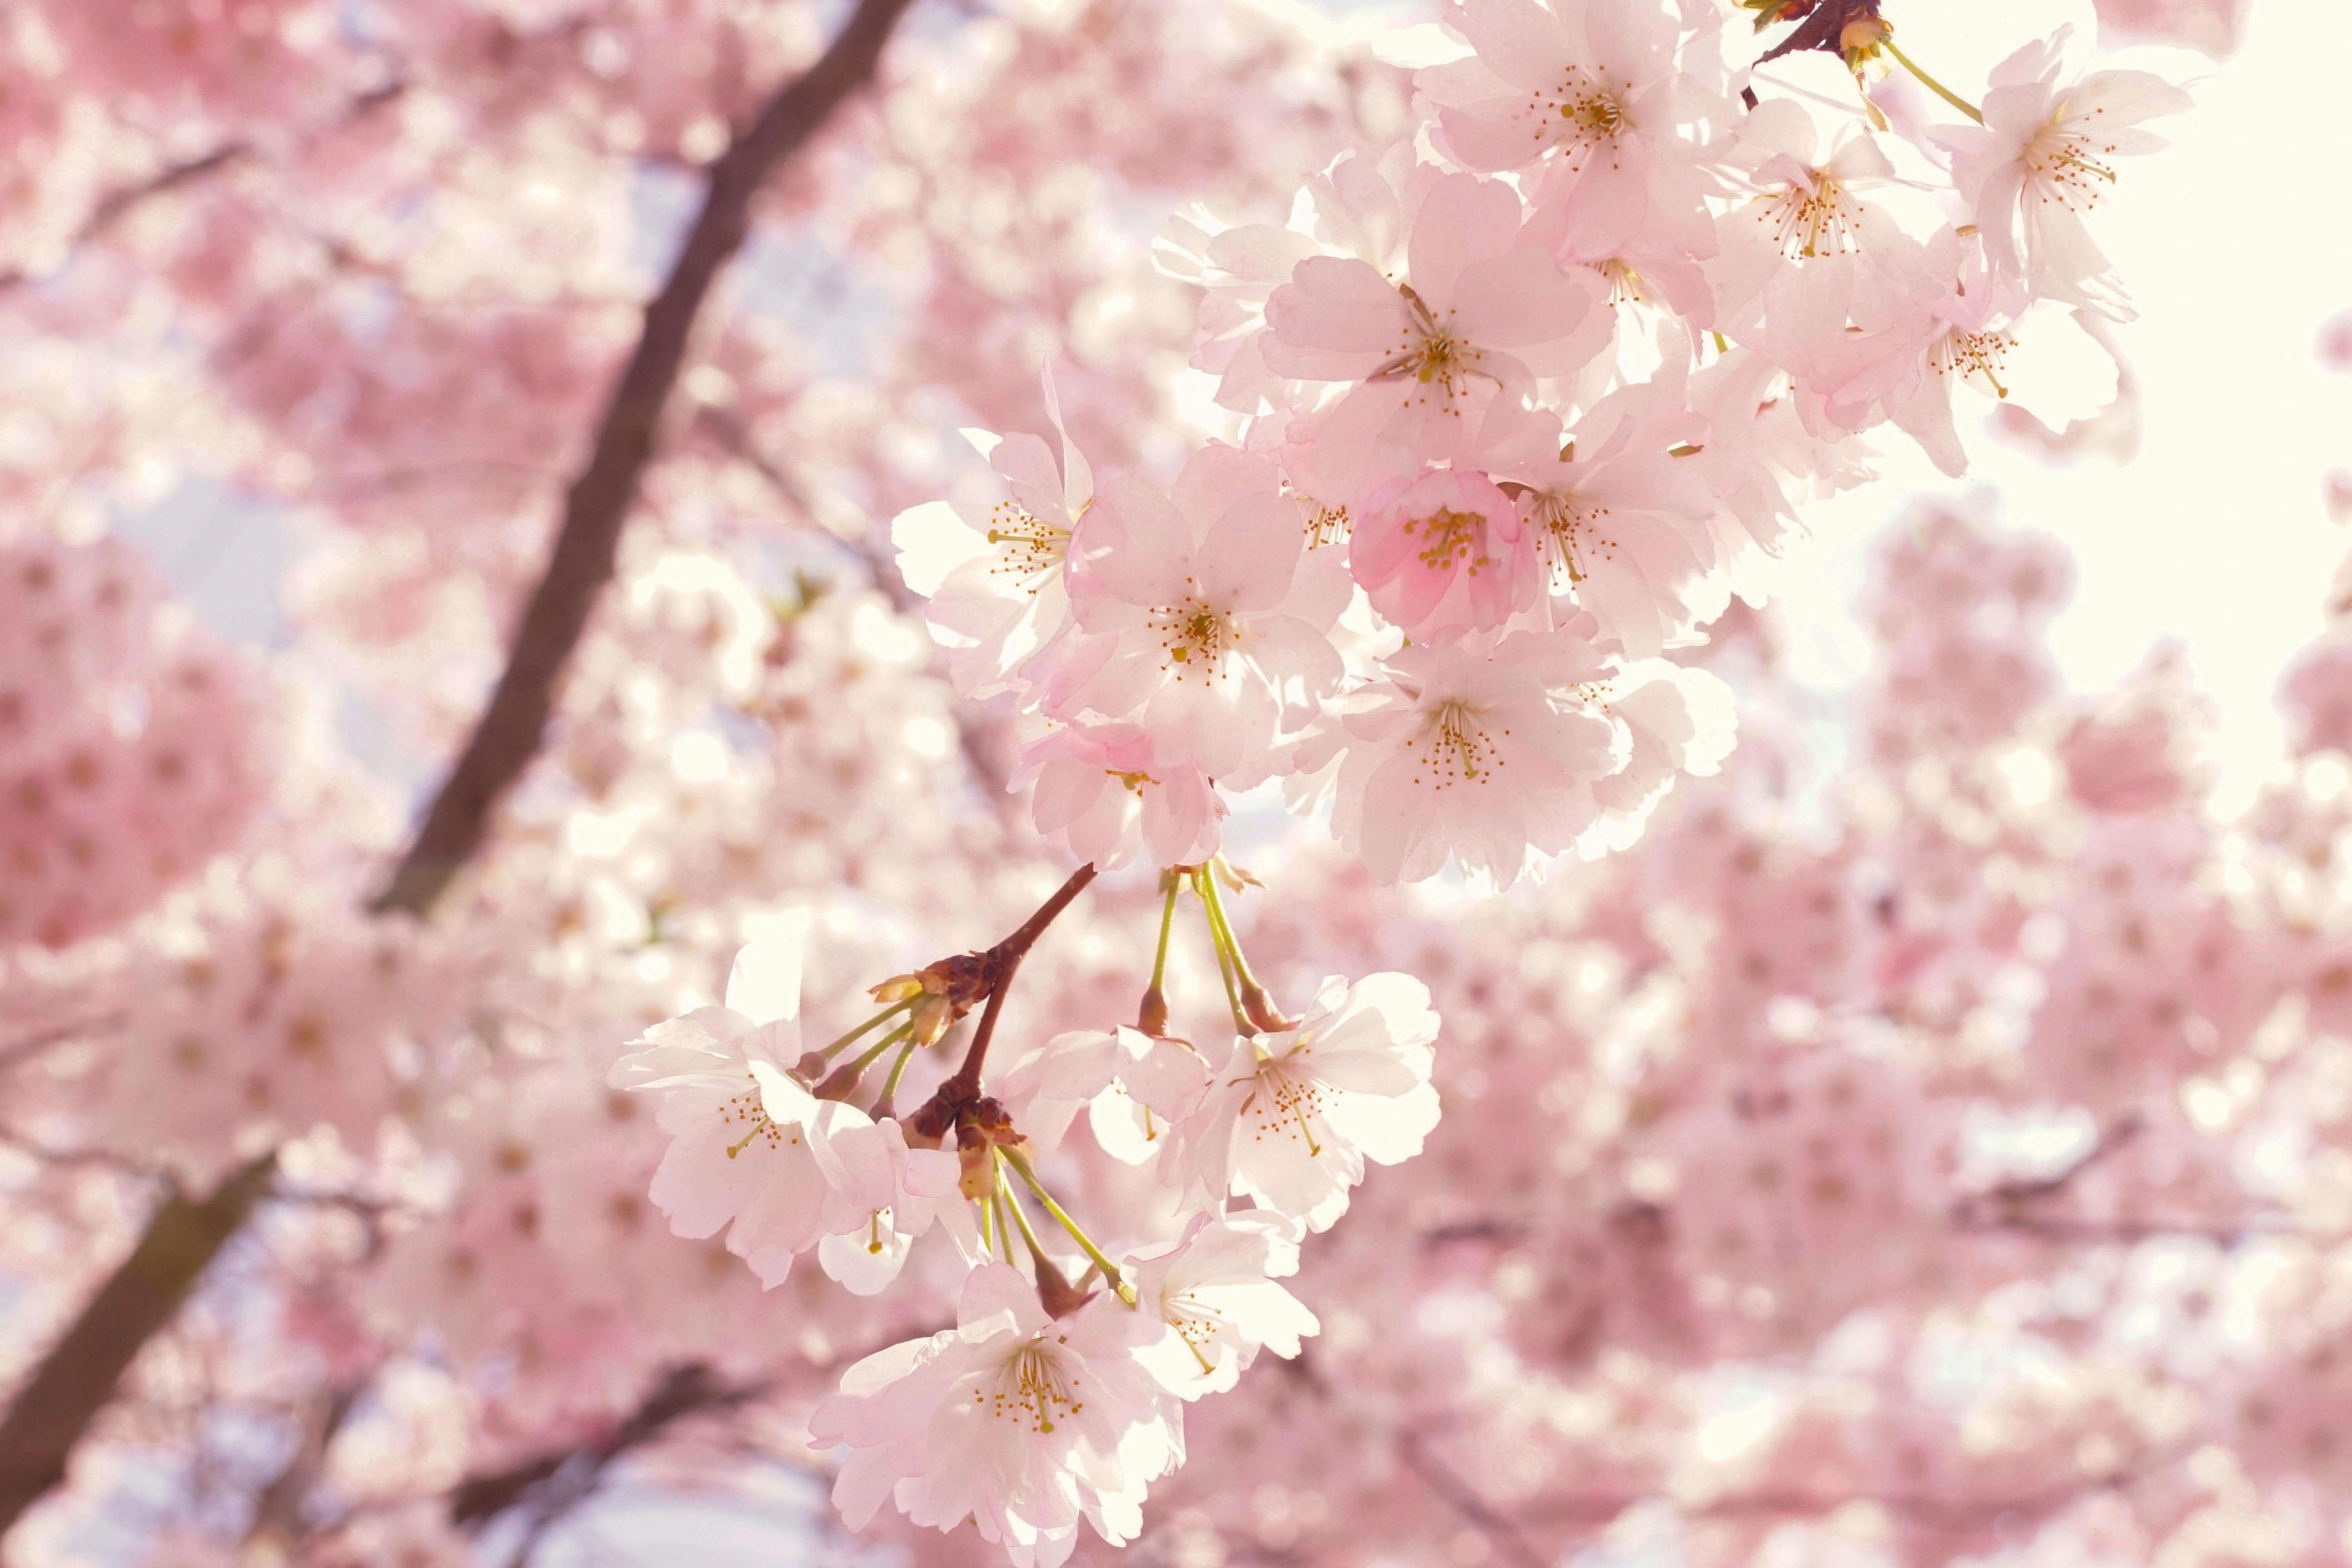 24년 벚꽃축제
전국 꽃축제
전국 벚꽃 명소
전국 벚꽃 개화시기
2024 벚꽃축제
벚꽃개화시기